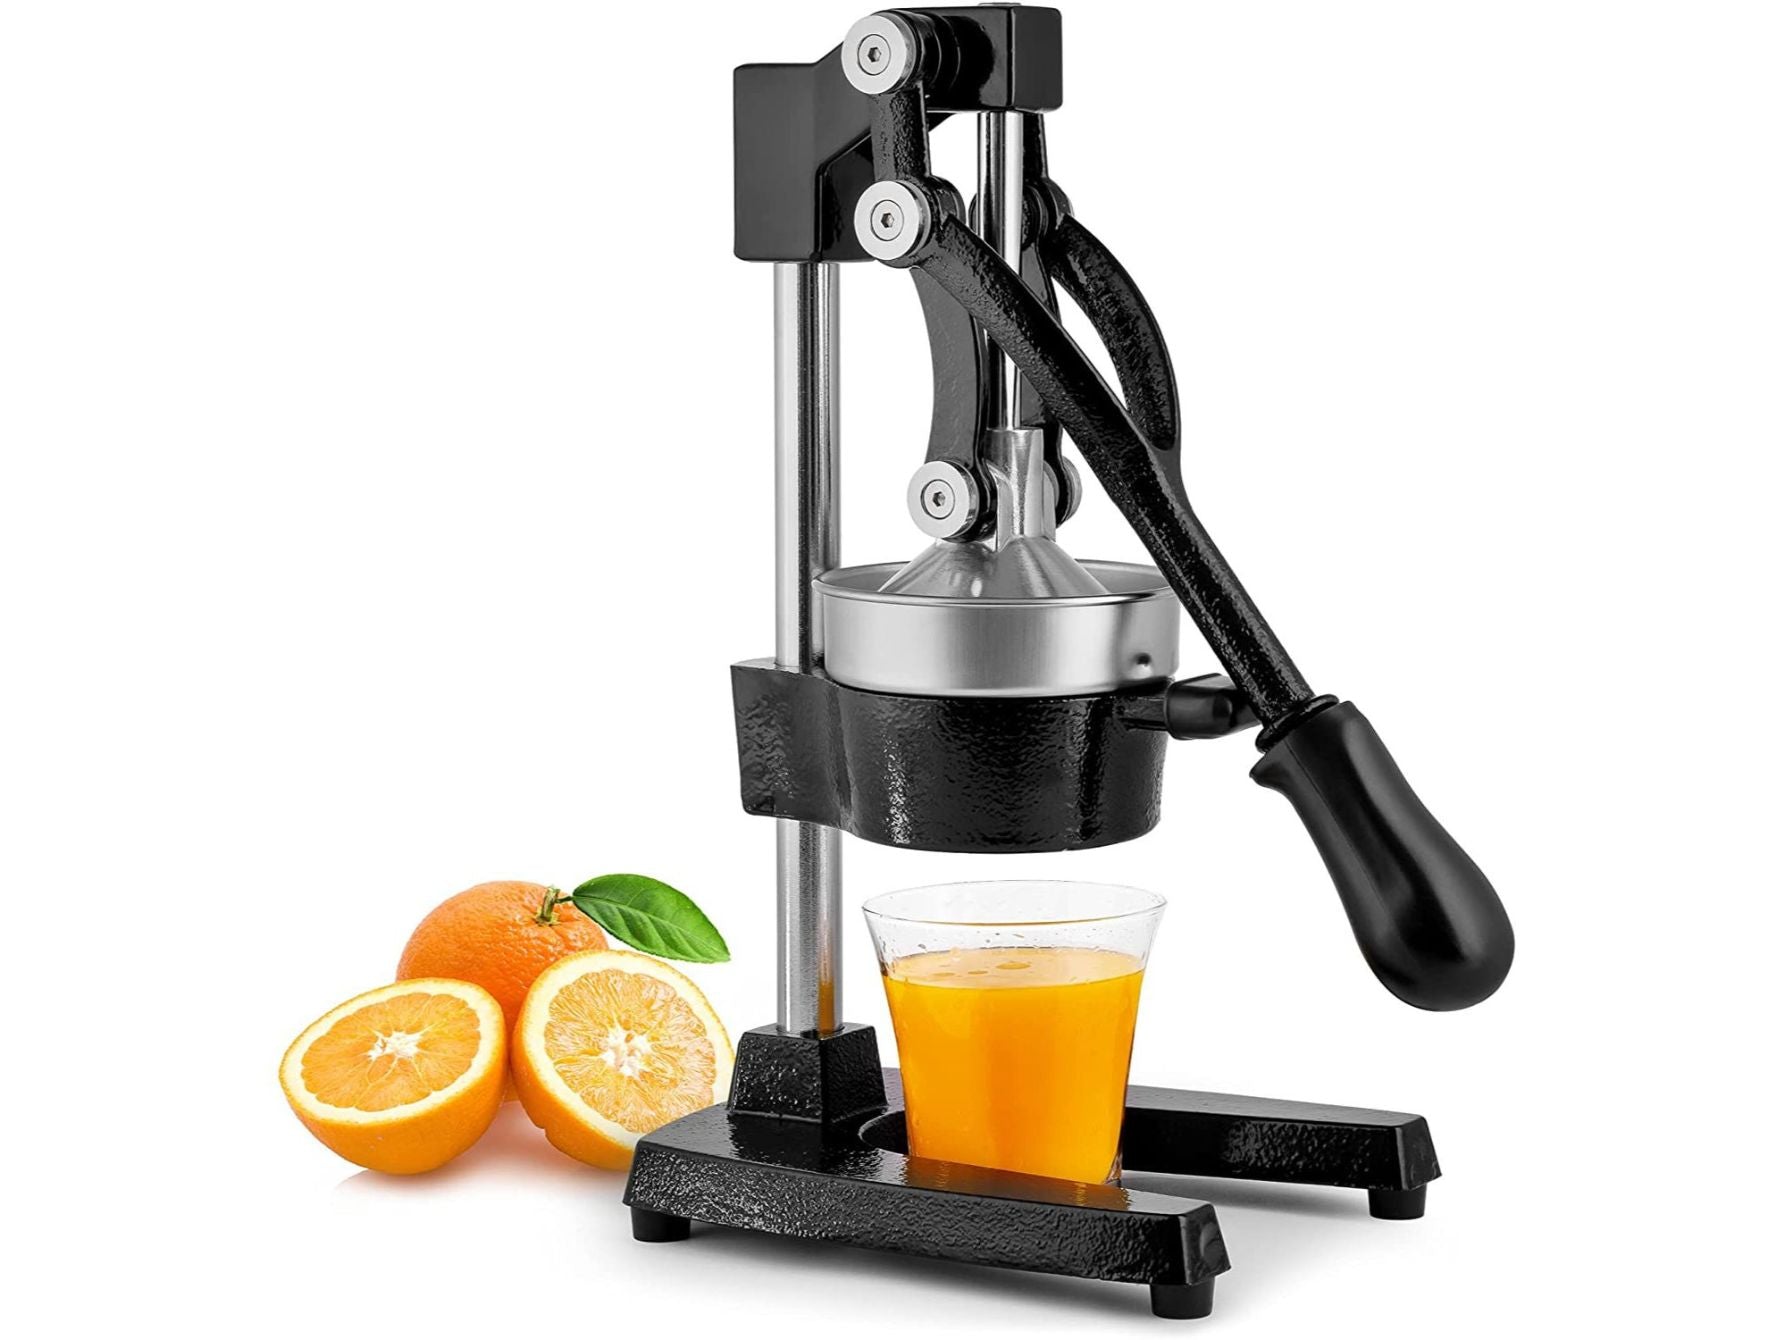 Simple Craft Premium Citrus Juicer - Manual Citrus Press and Orange Squeezer